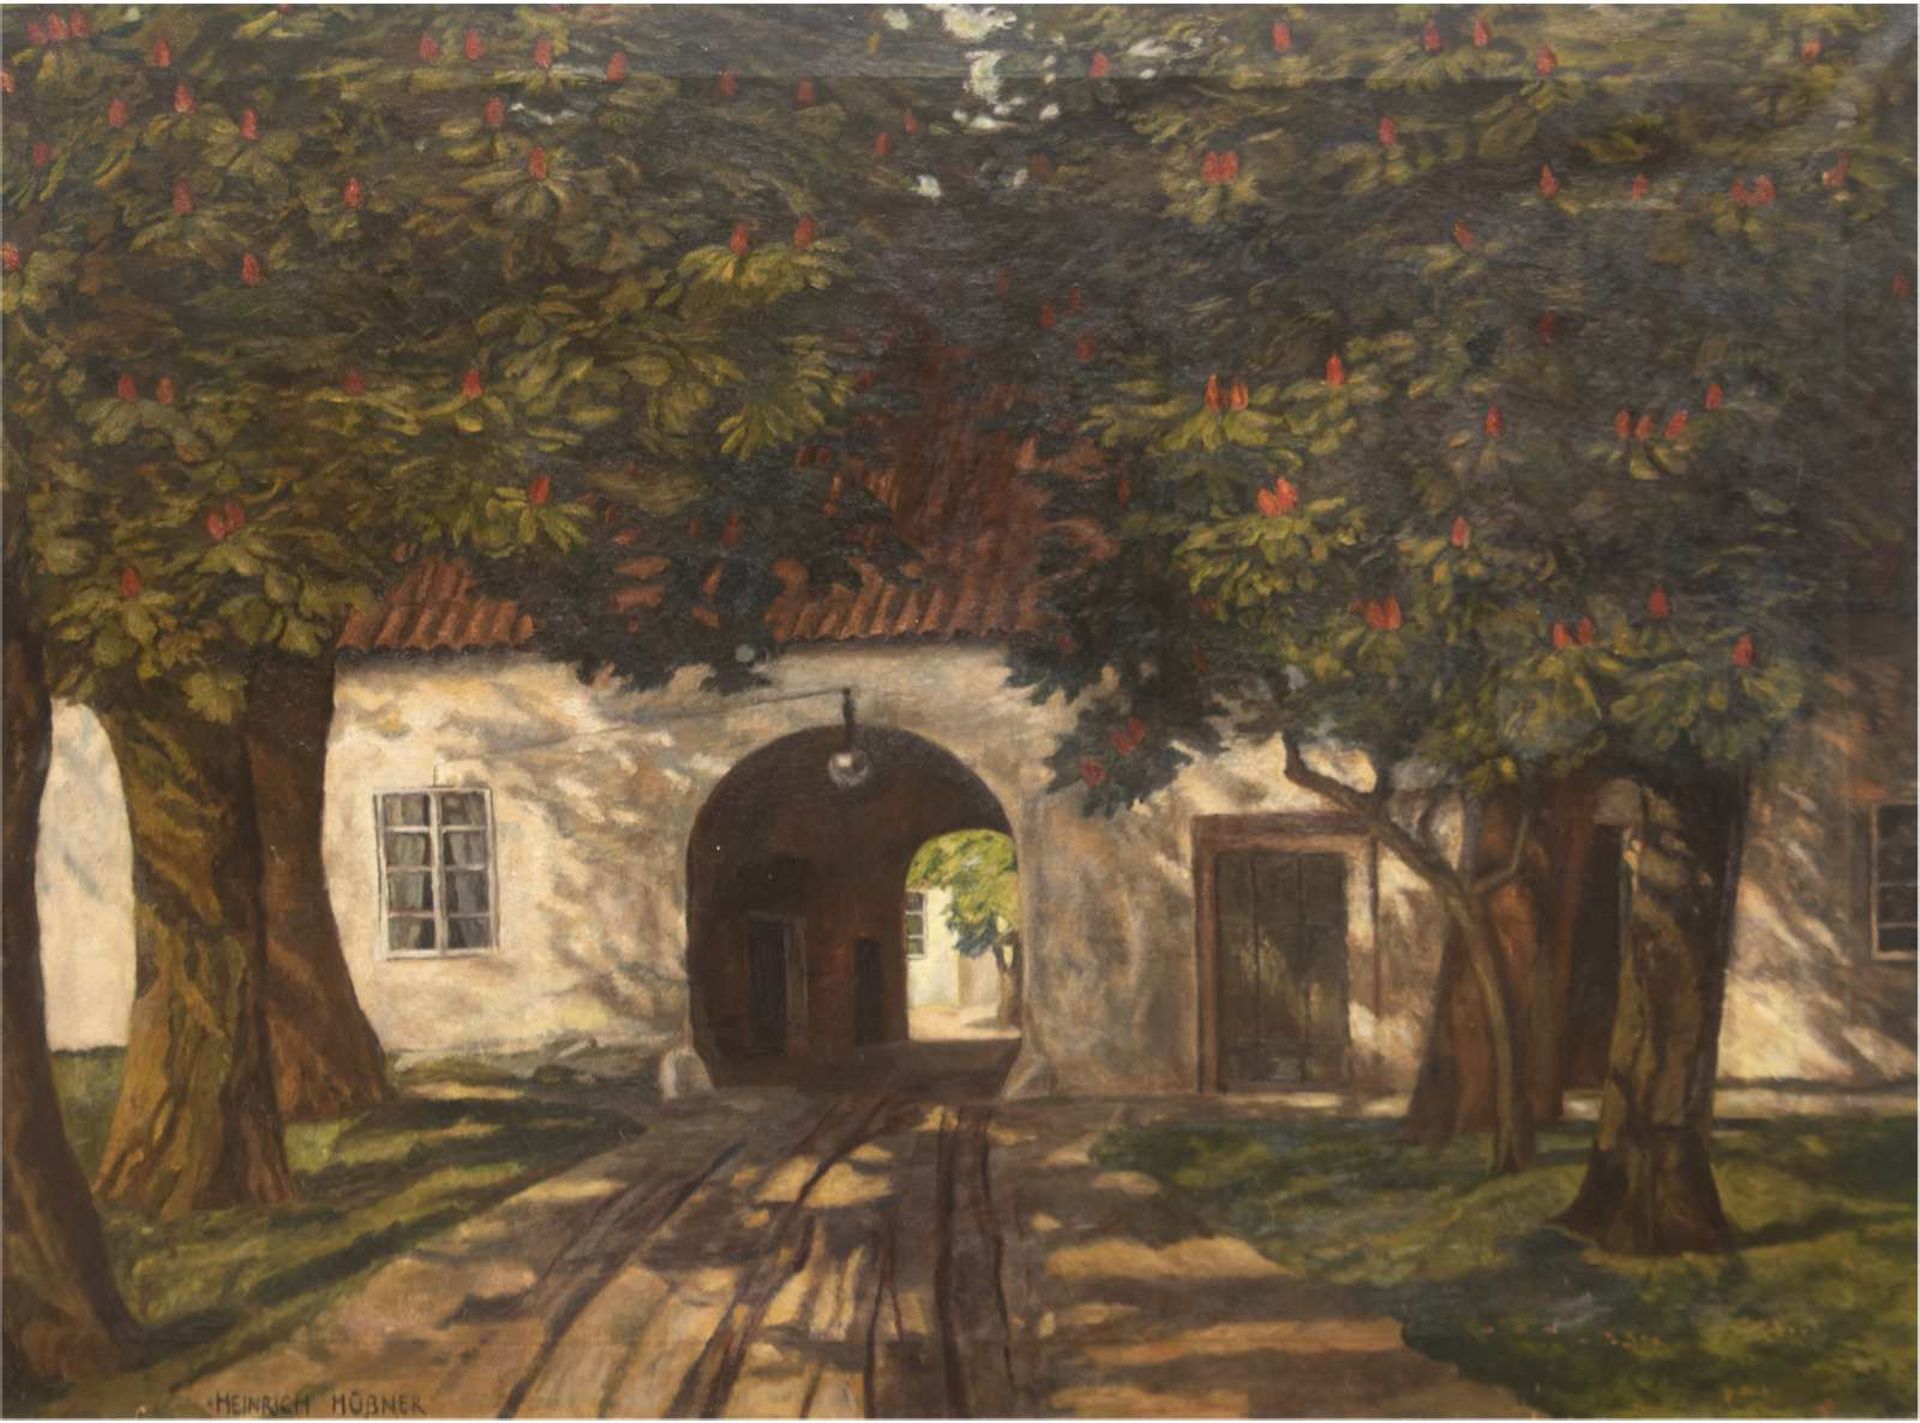 Hübner, Heinrich (1869 Berlin-1945 Konstanz-Dingelsdorf) "Bäume vor der Toreinfahrt",Öl/Lw